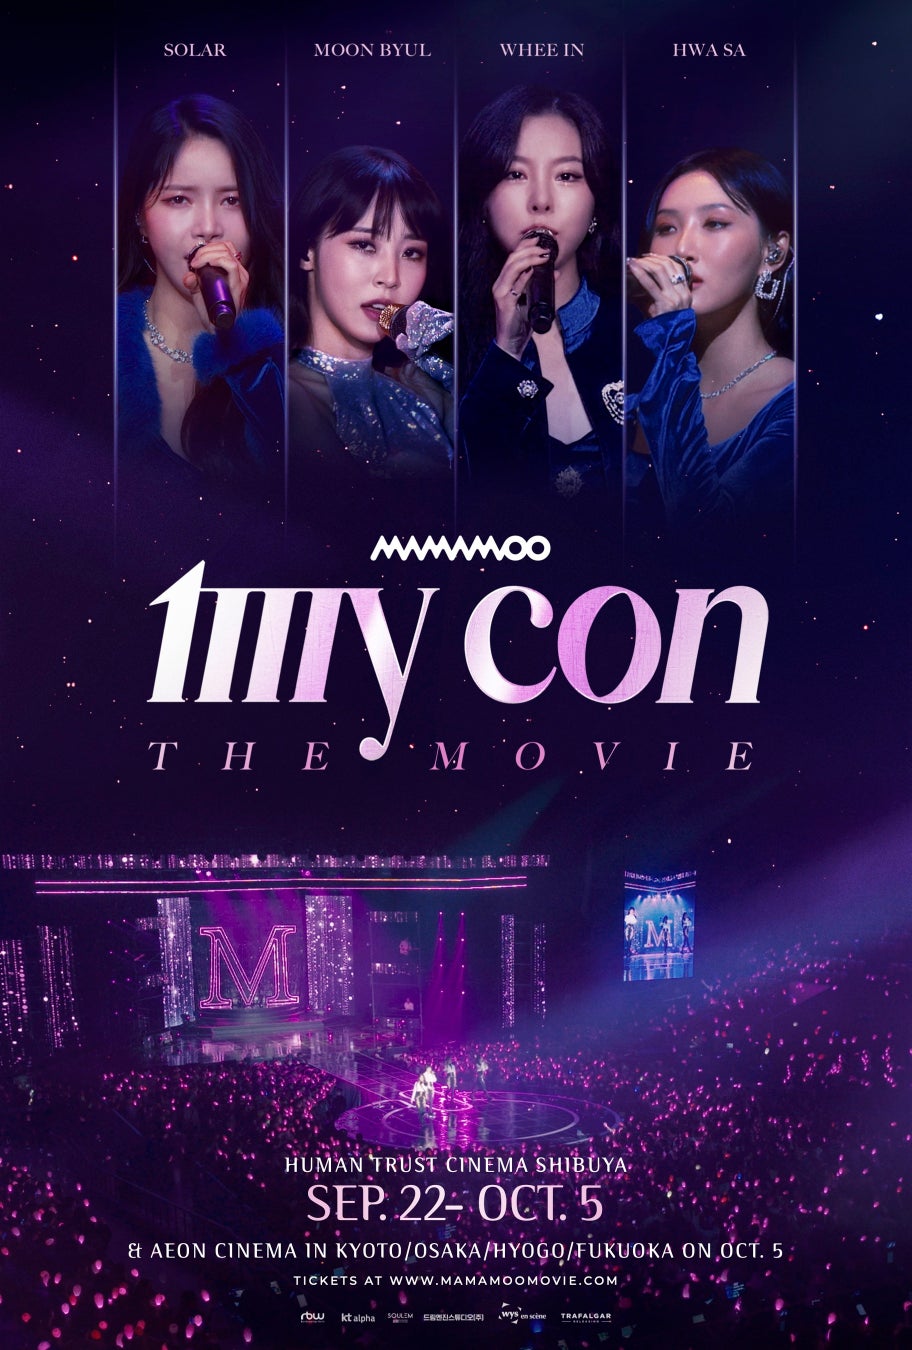 映画『MAMAMOO: MY CON THE MOVIE』K-POP人気グループ MAMAMOO の初のワールドツアー映画の予告編が完成！